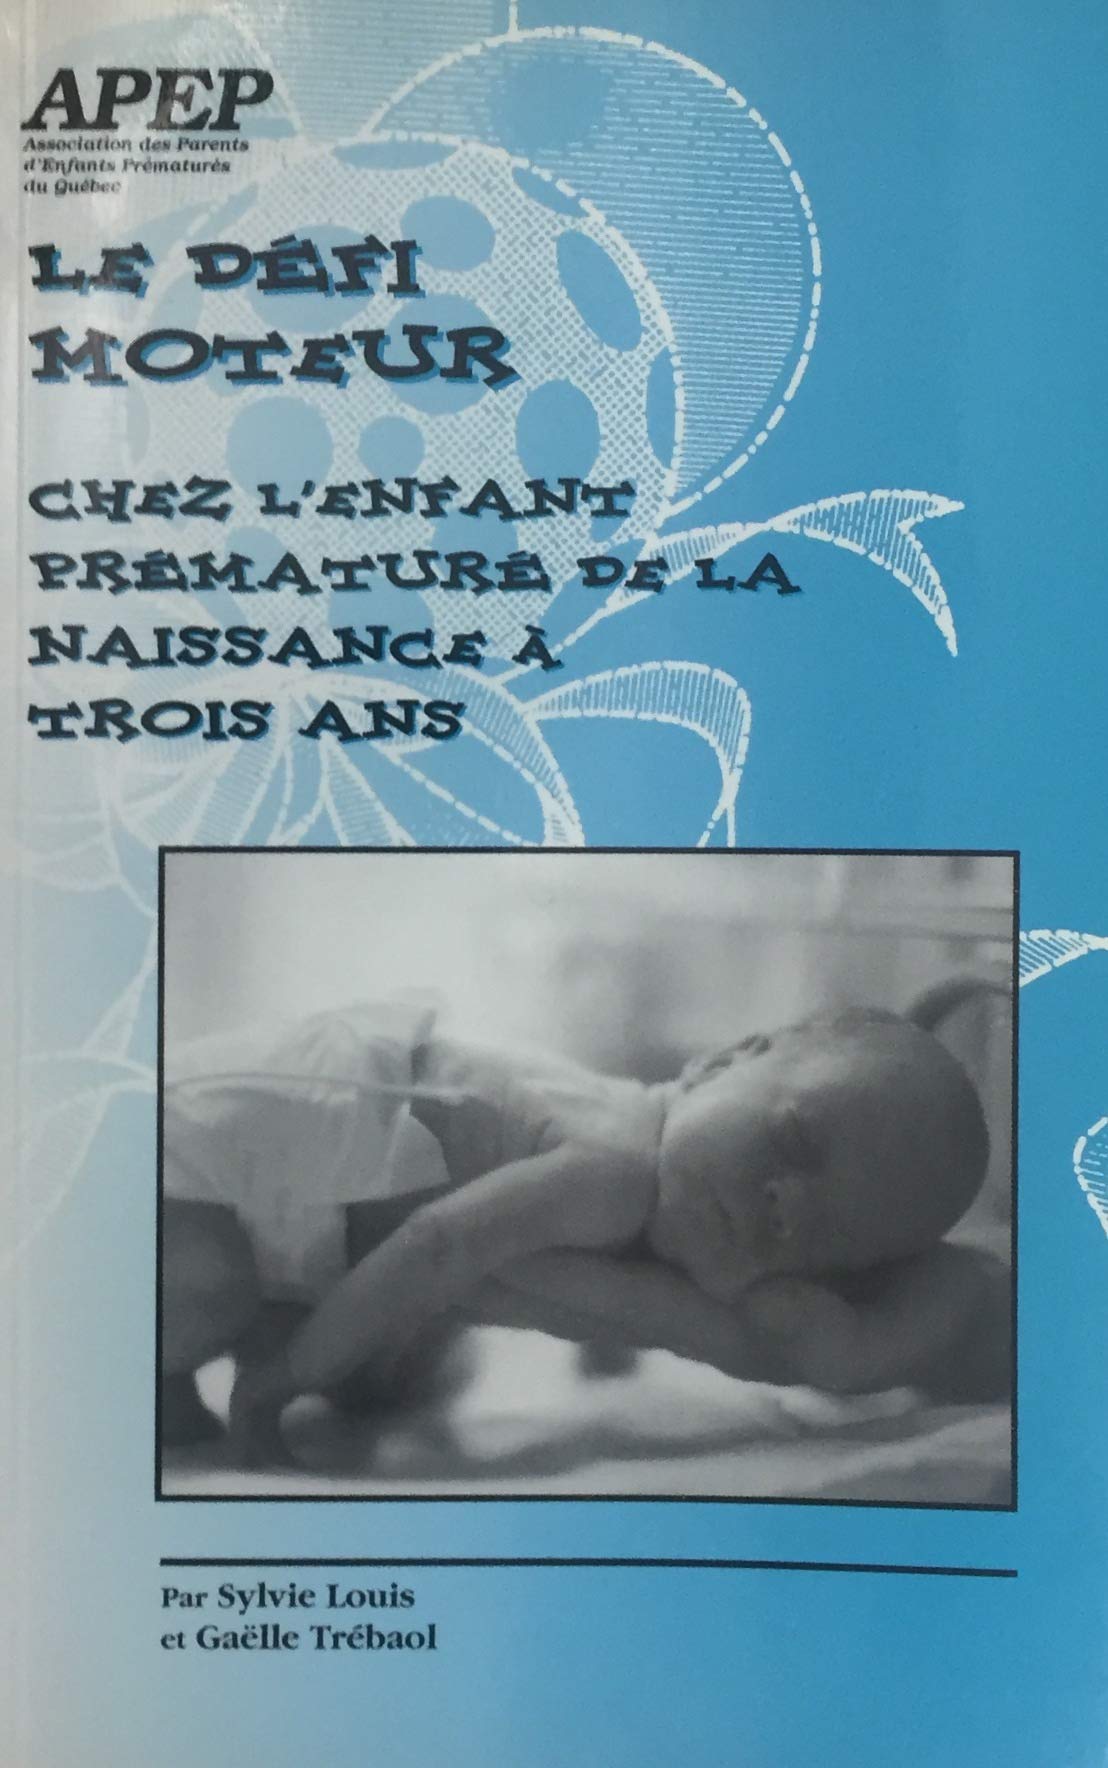 Livre ISBN 2922289060 Le défi moteur chez l'enfant prématuré de la naissance à trois ans (Sylvie Louis)